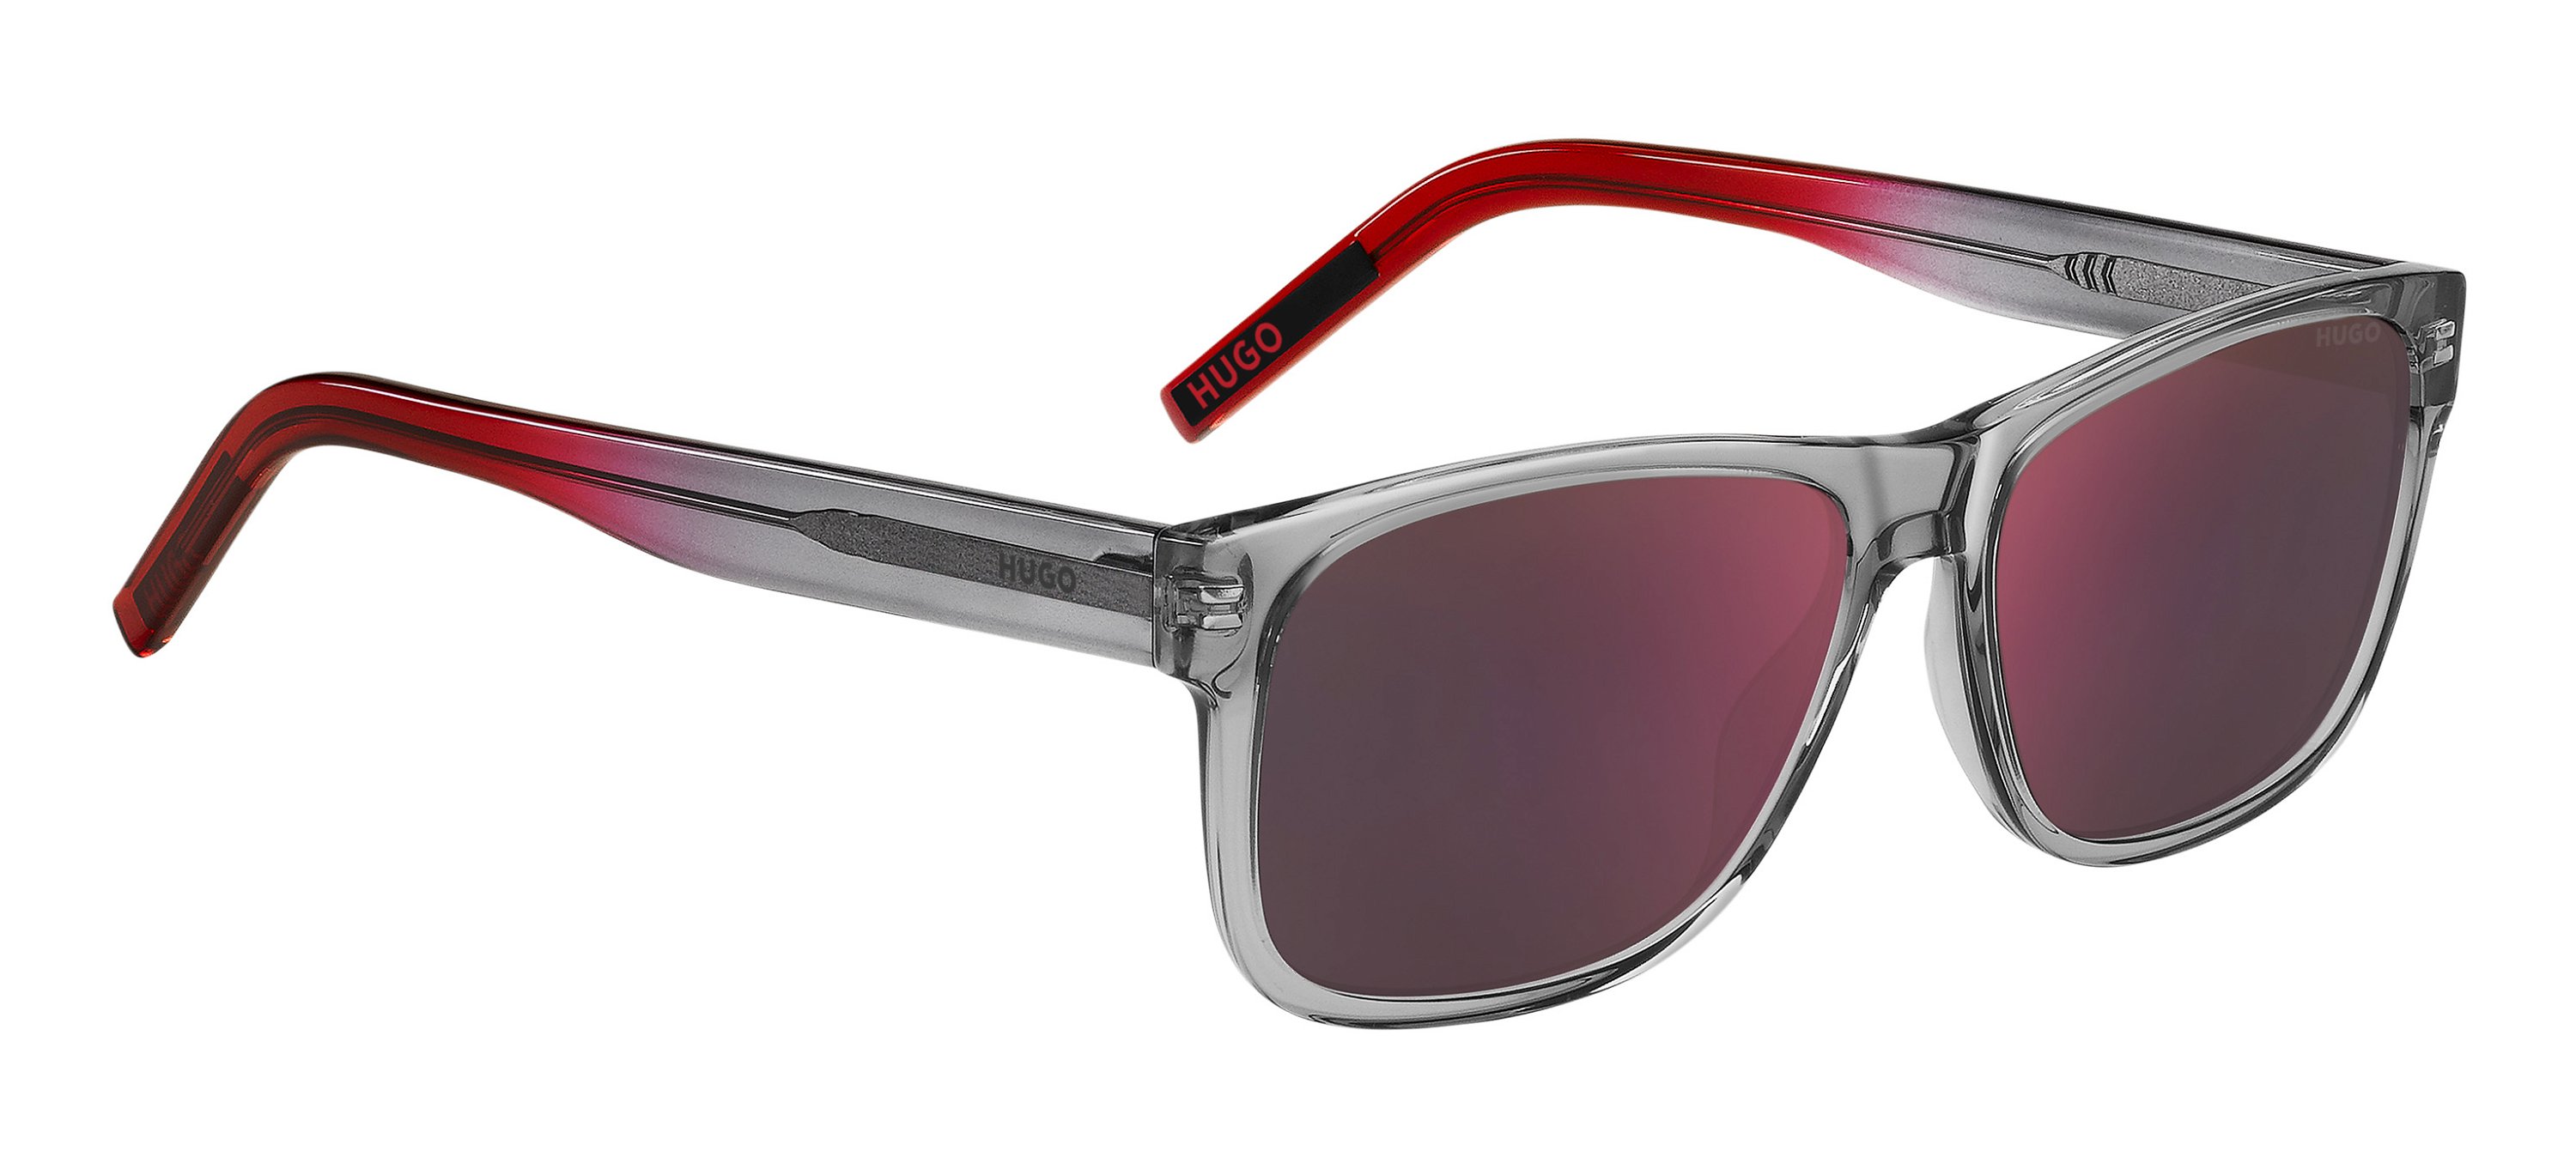 Das Bild zeigt die Sonnenbrille HG1260/S 268 von der Marke Hugo in grau/rot.